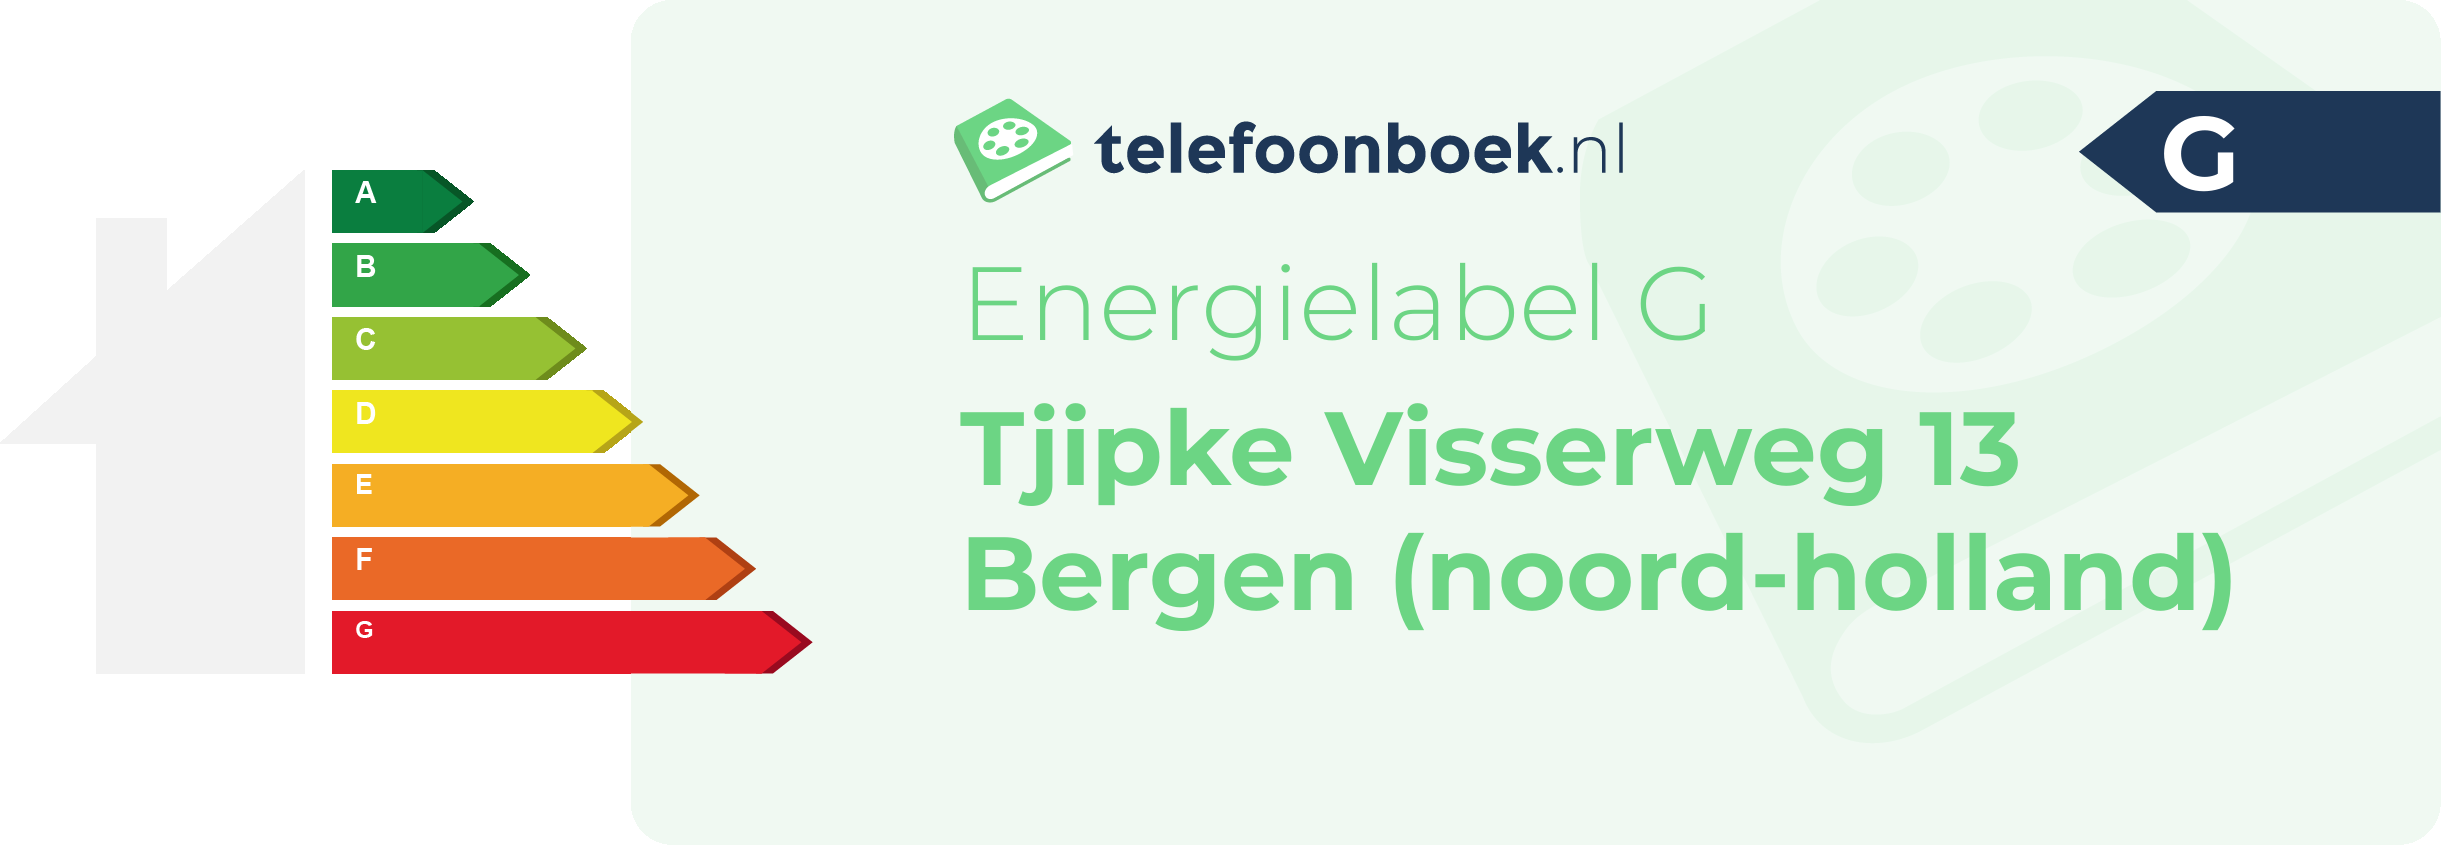 Energielabel Tjipke Visserweg 13 Bergen (Noord-Holland)